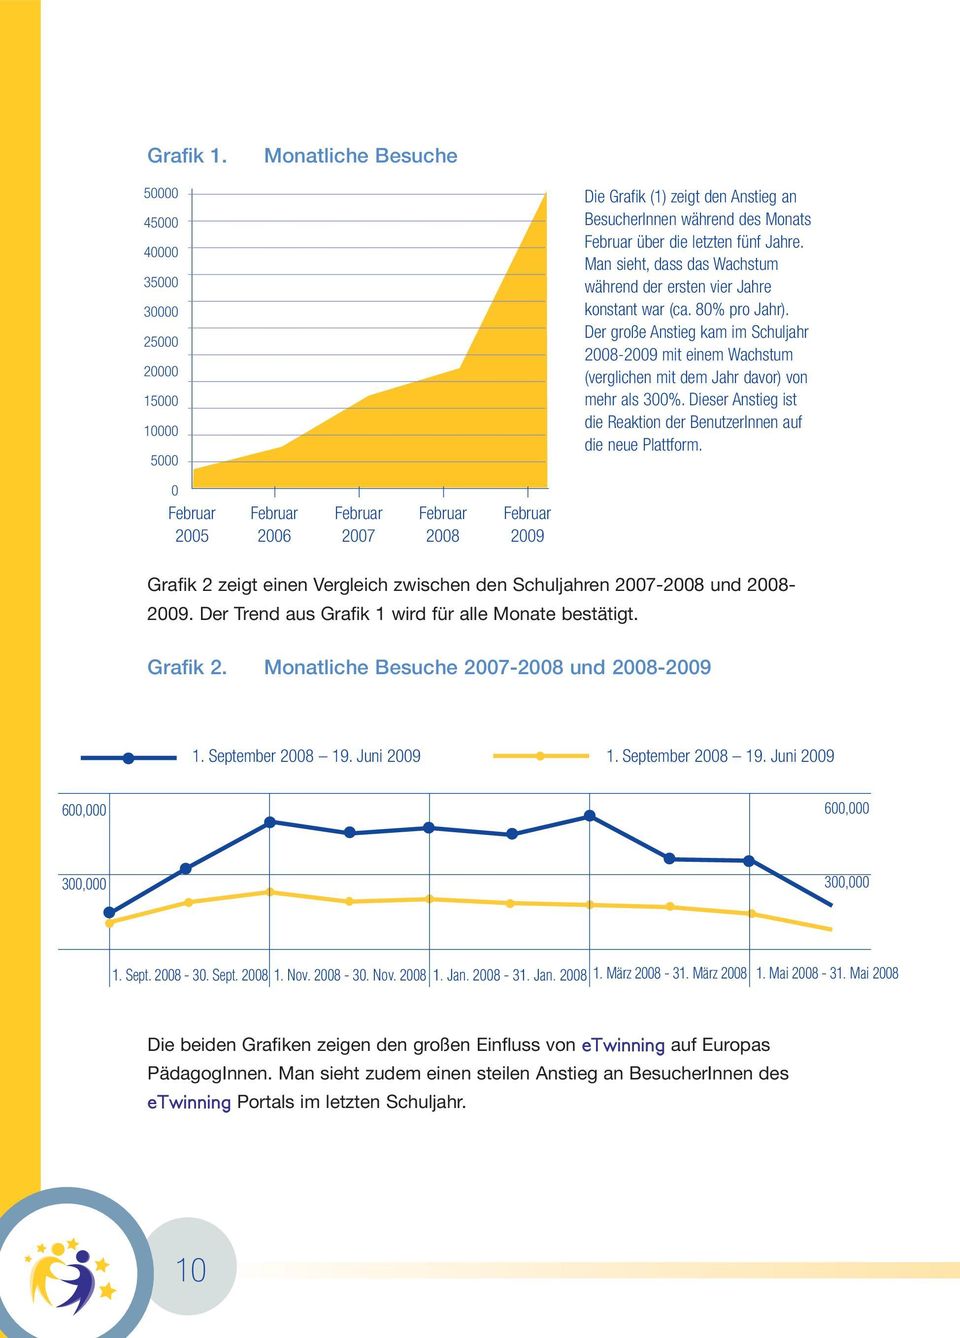 Der große Anstieg kam im Schuljahr 2008-2009 mit einem Wachstum (verglichen mit dem Jahr davor) von mehr als 300%. Dieser Anstieg ist die Reaktion der BenutzerInnen auf die neue Plattform.